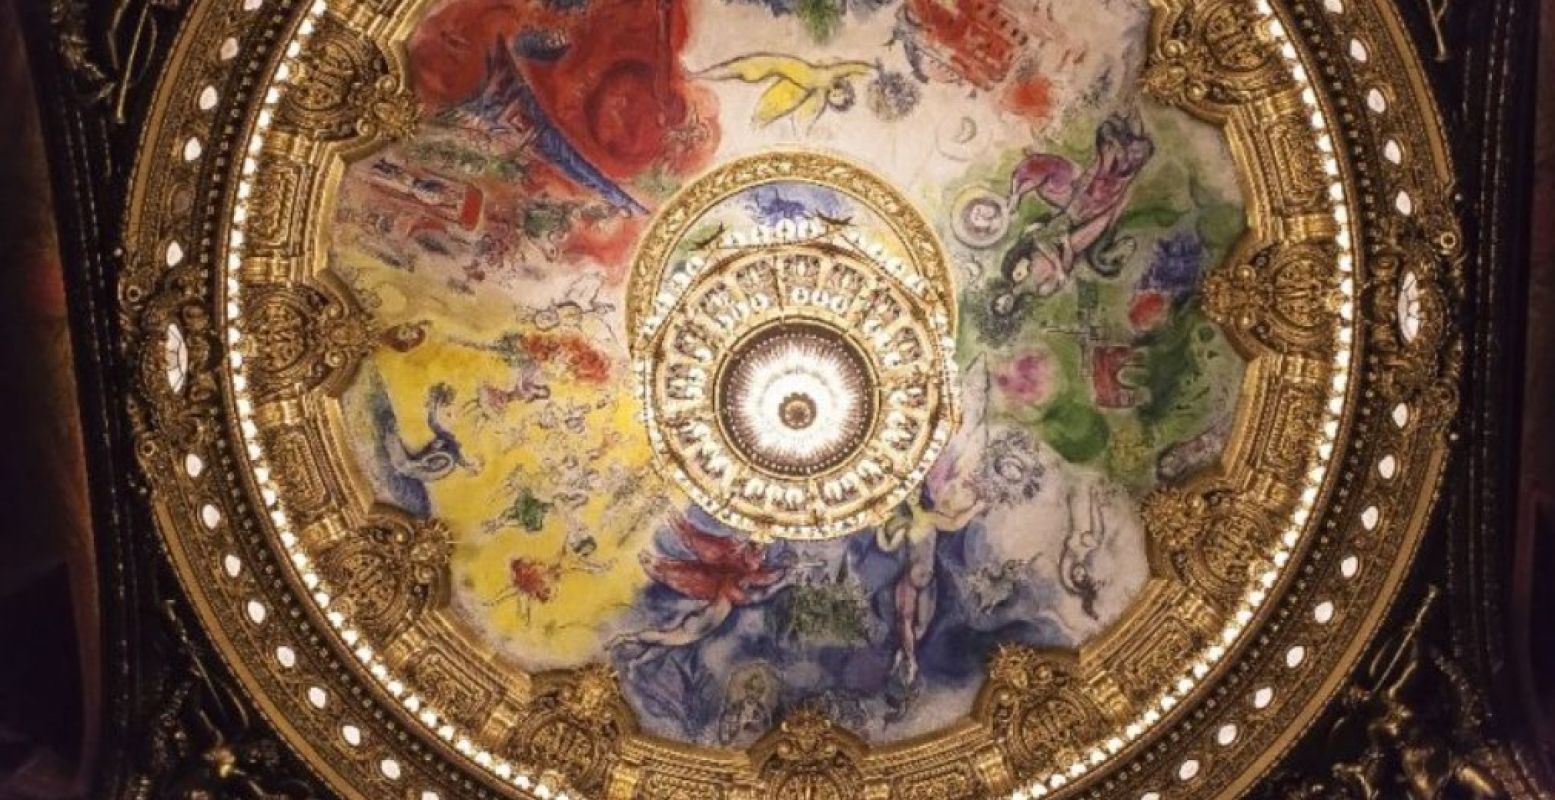 Het Palais Garnier aan de Place de l'Opéra in Parijs inspireerde de start van ons magazine. Hier de plafondschildering van Marc Chagall.